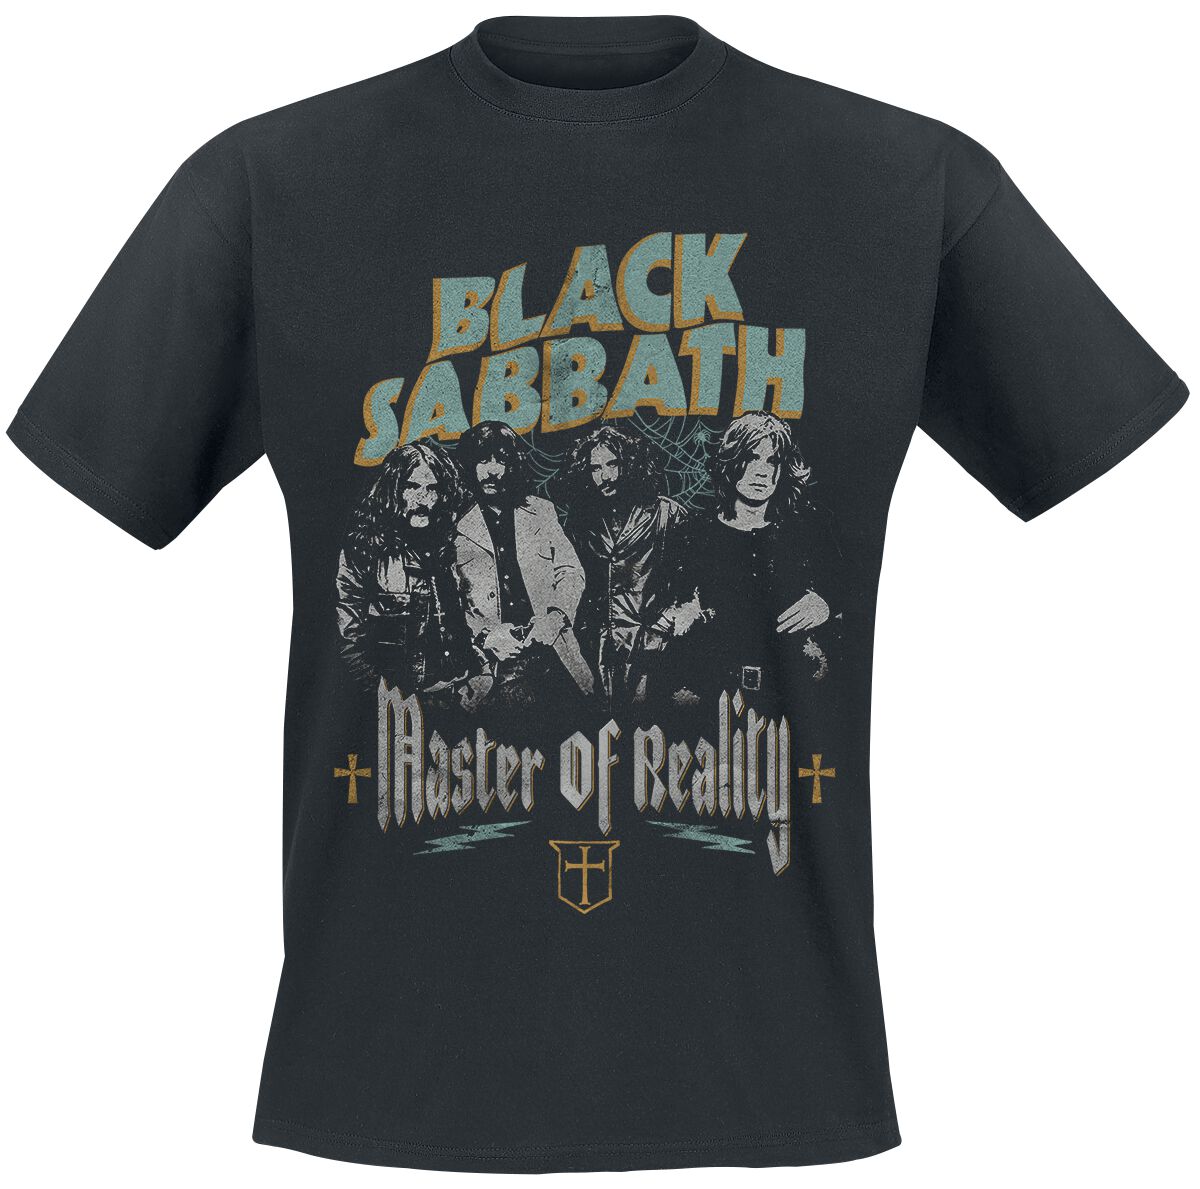 Black Sabbath T-Shirt - Master of reality - S bis 3XL - für Männer - Größe XL - schwarz  - Lizenziertes Merchandise!